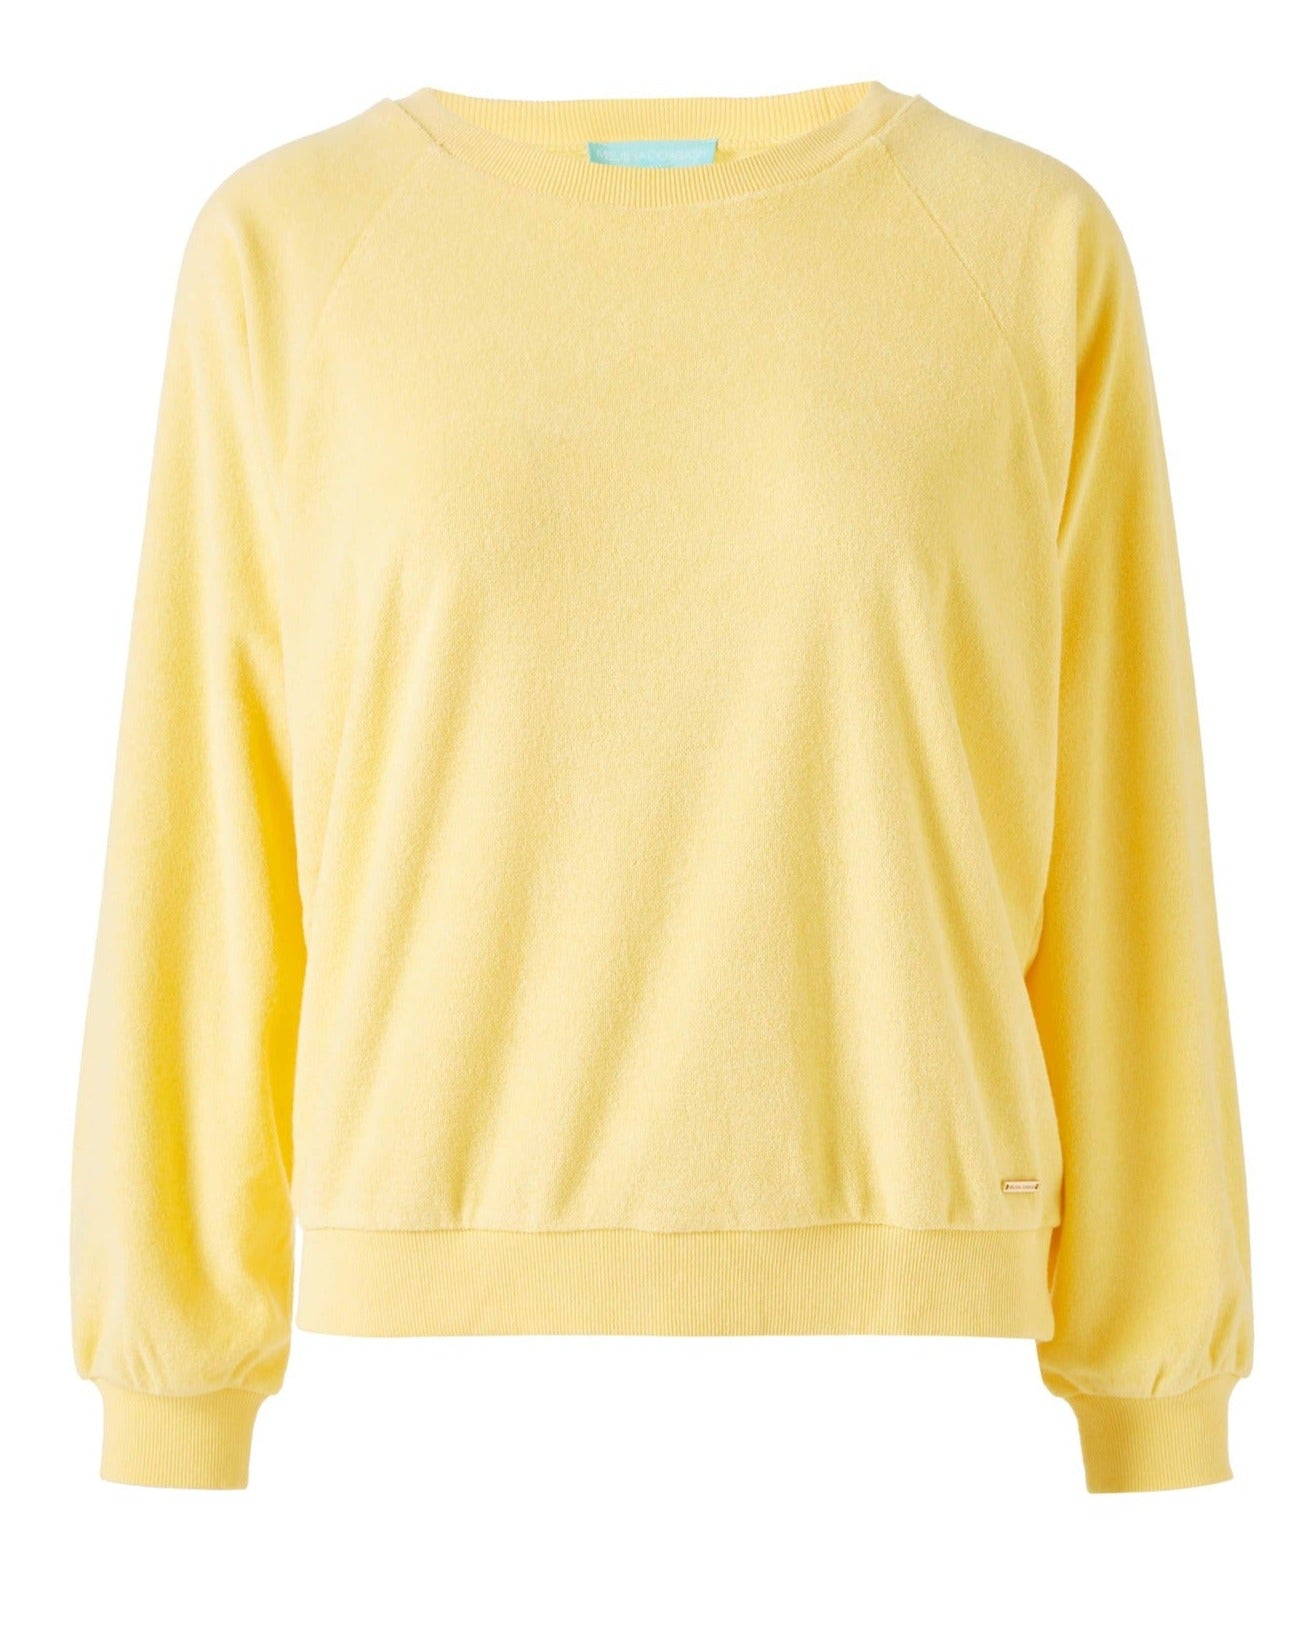 Yellow Sweatshirt Women | Round Neck Sweatshirt Yellow | Terry Sweatshirt Yellow 